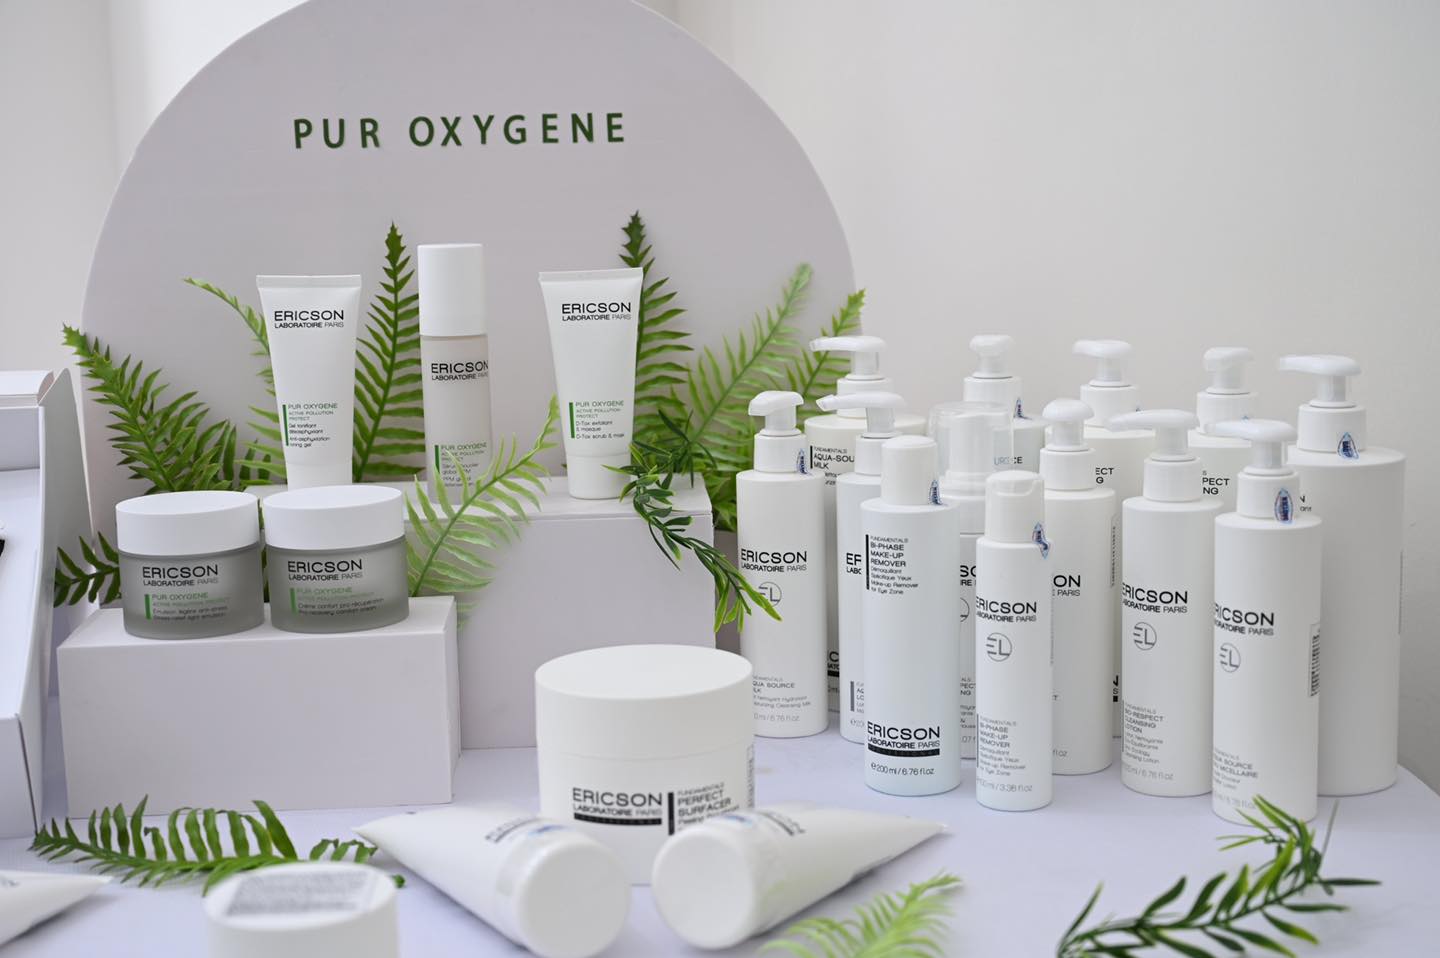 Hội thảo ra mắt dòng sản phẩm PUR OXYGENE chăm sóc da với tính năng vượt trội